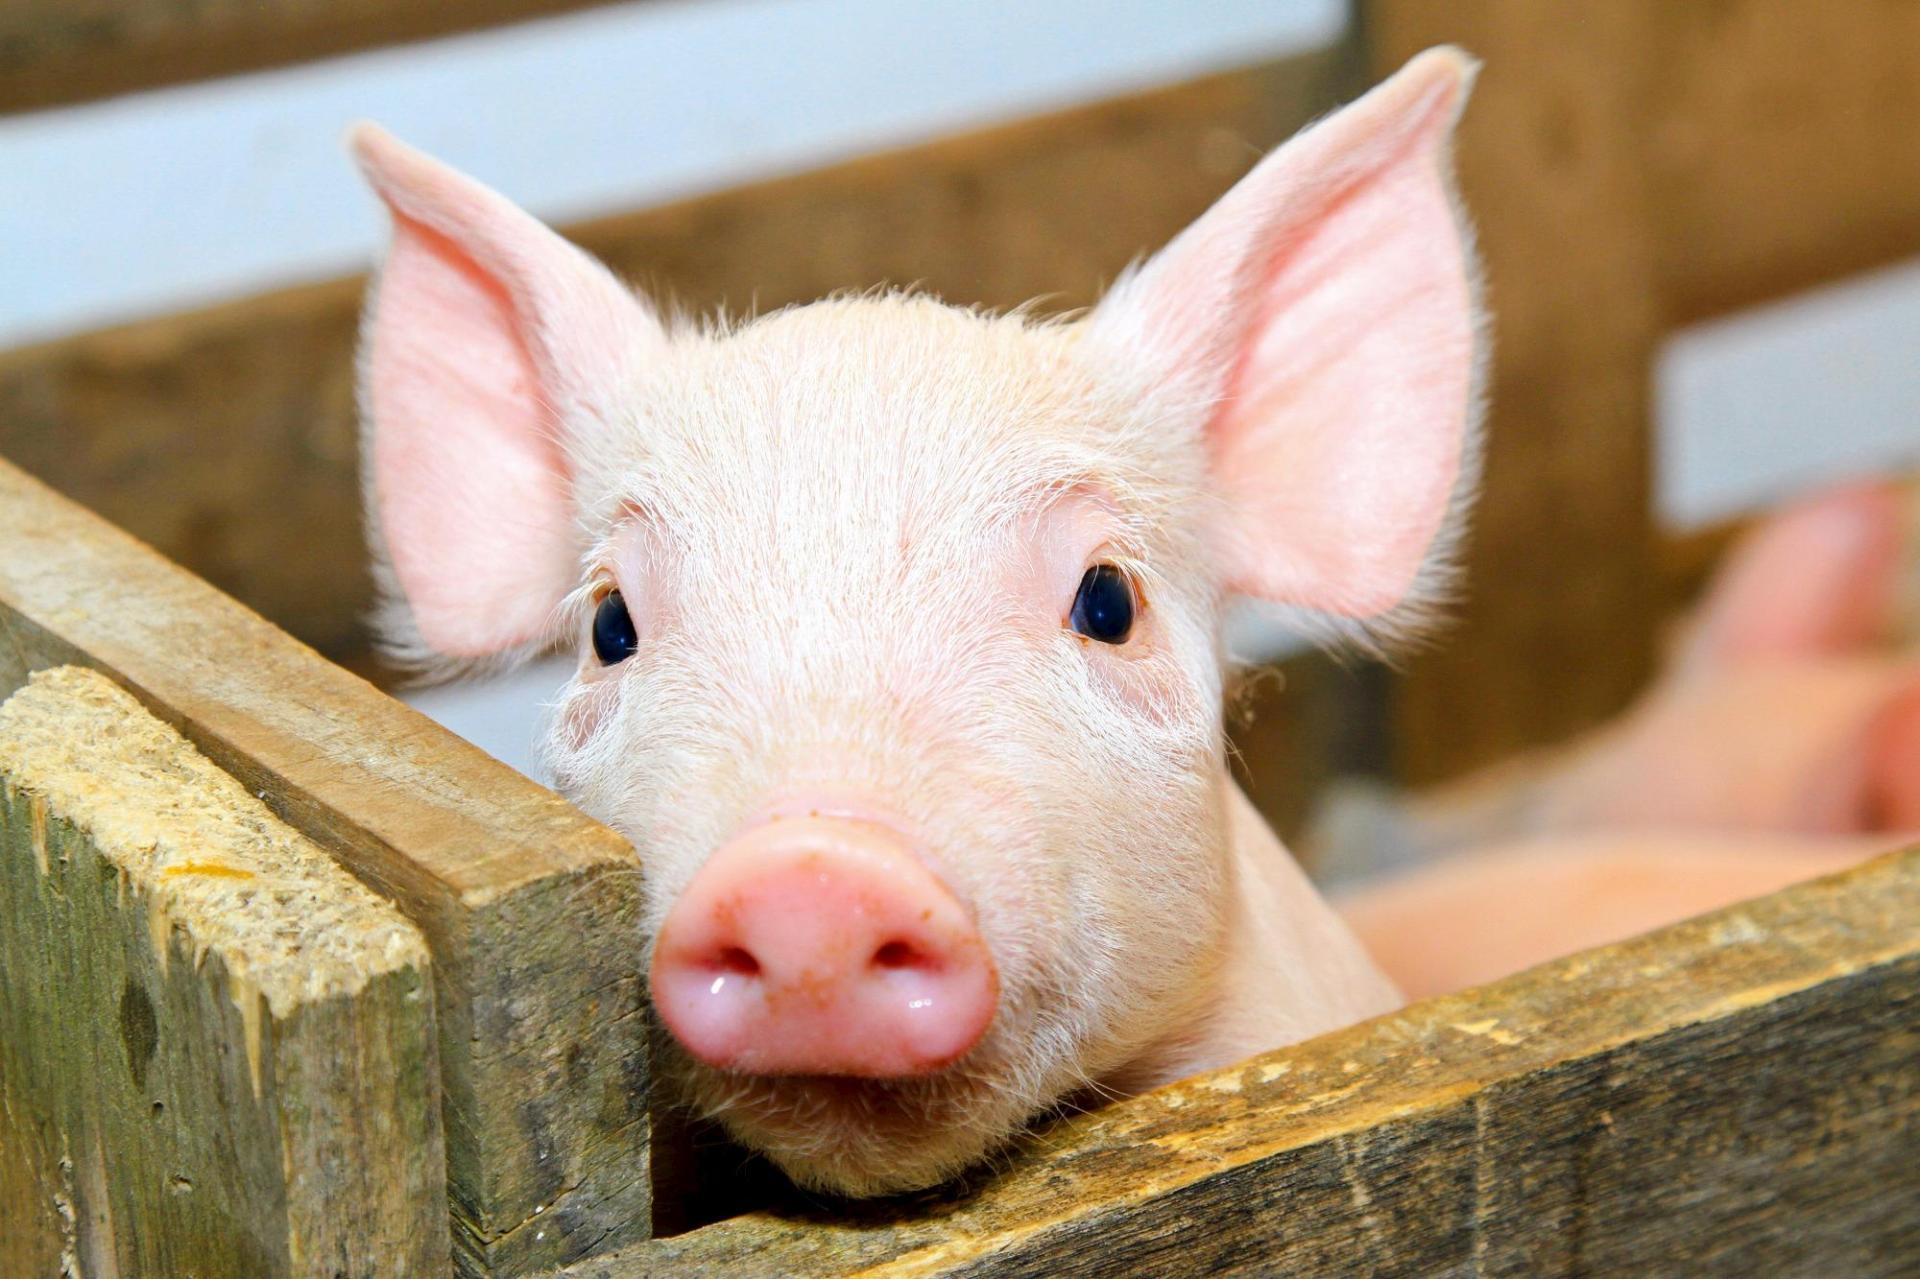 Exportações brasileiras de carne suína crescem 16,9% em março